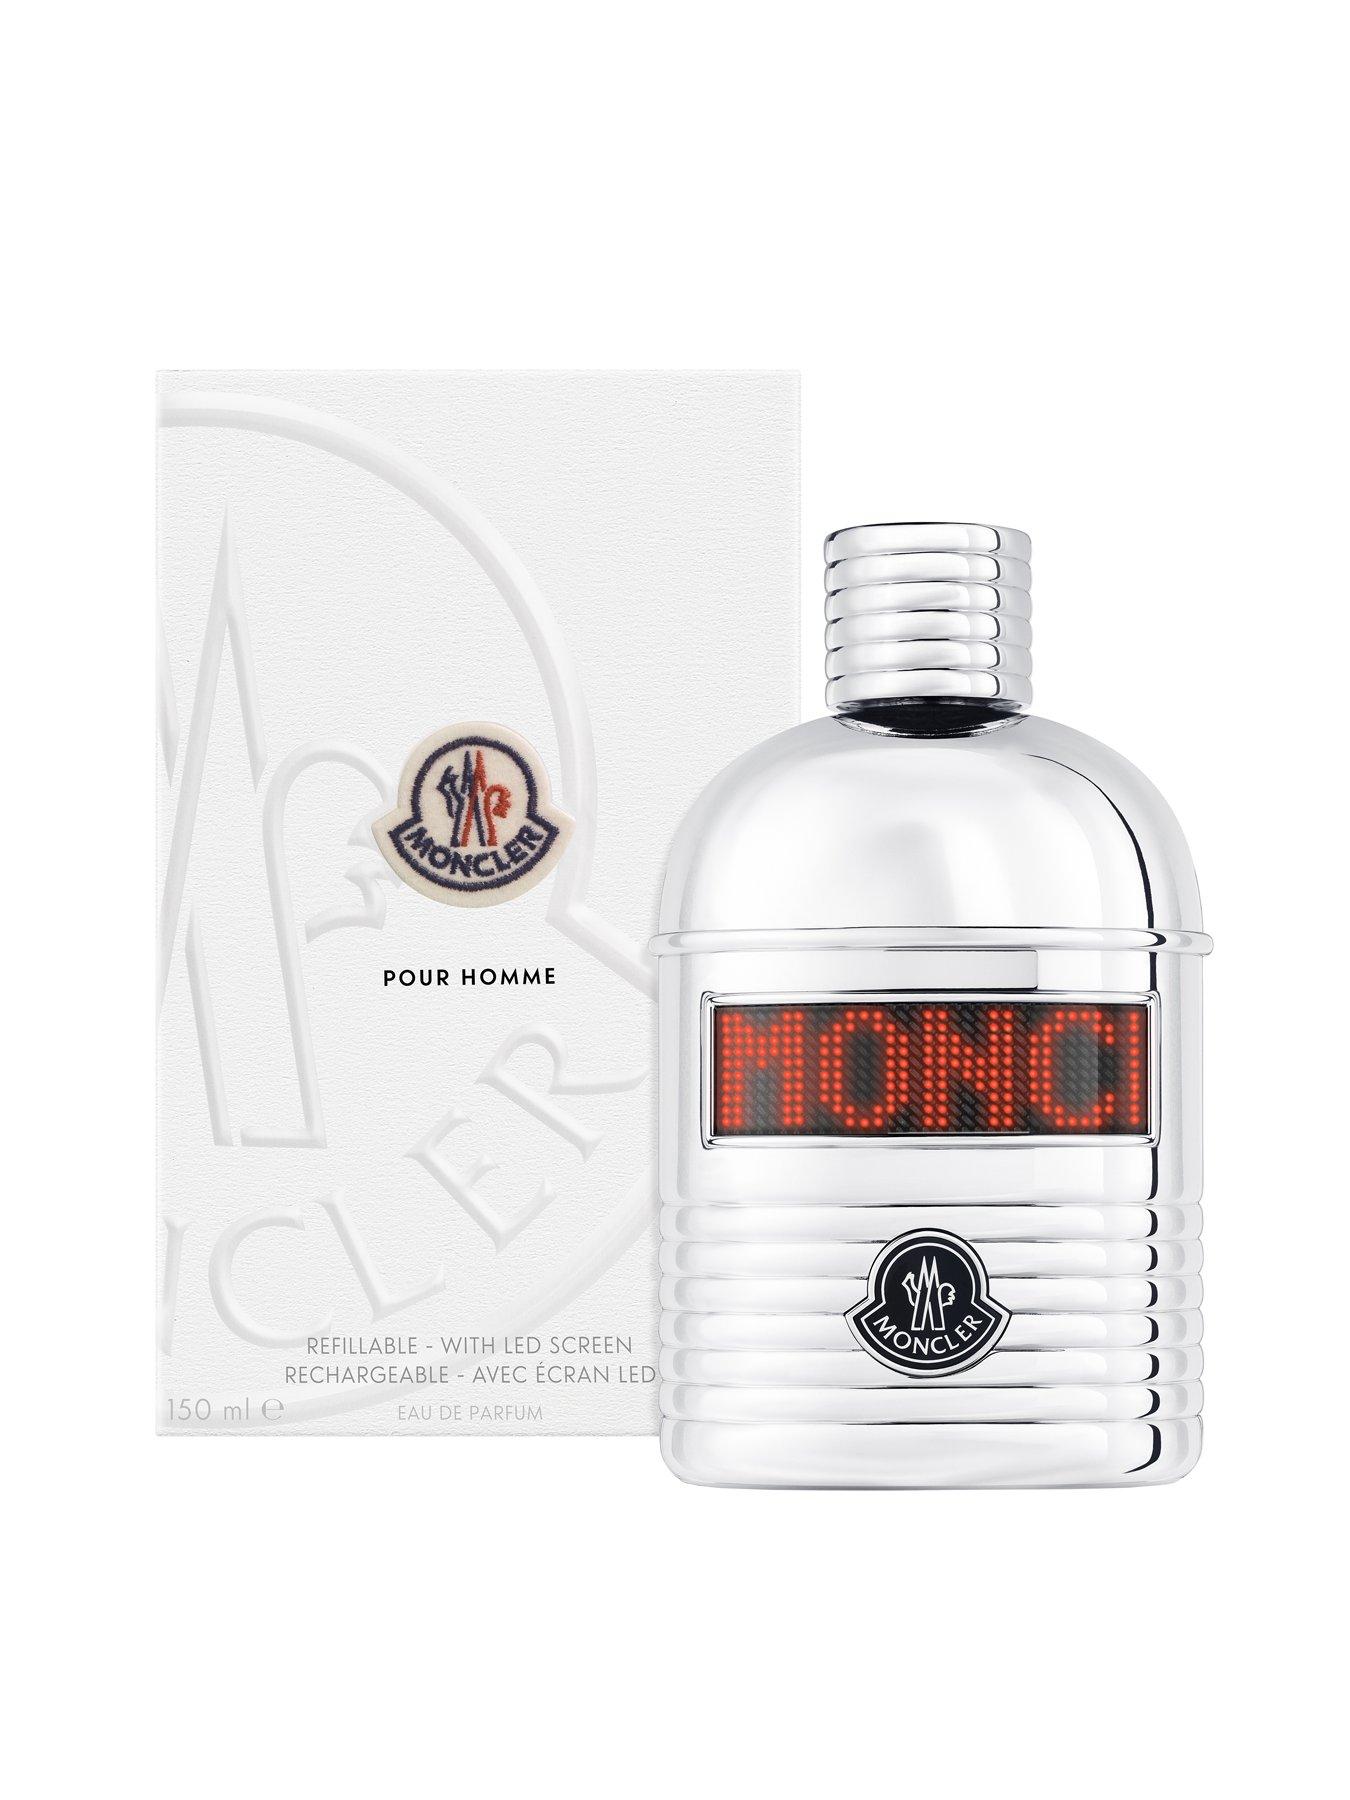 Moncler Pour Homme Eau De Parfum 150ml Spray